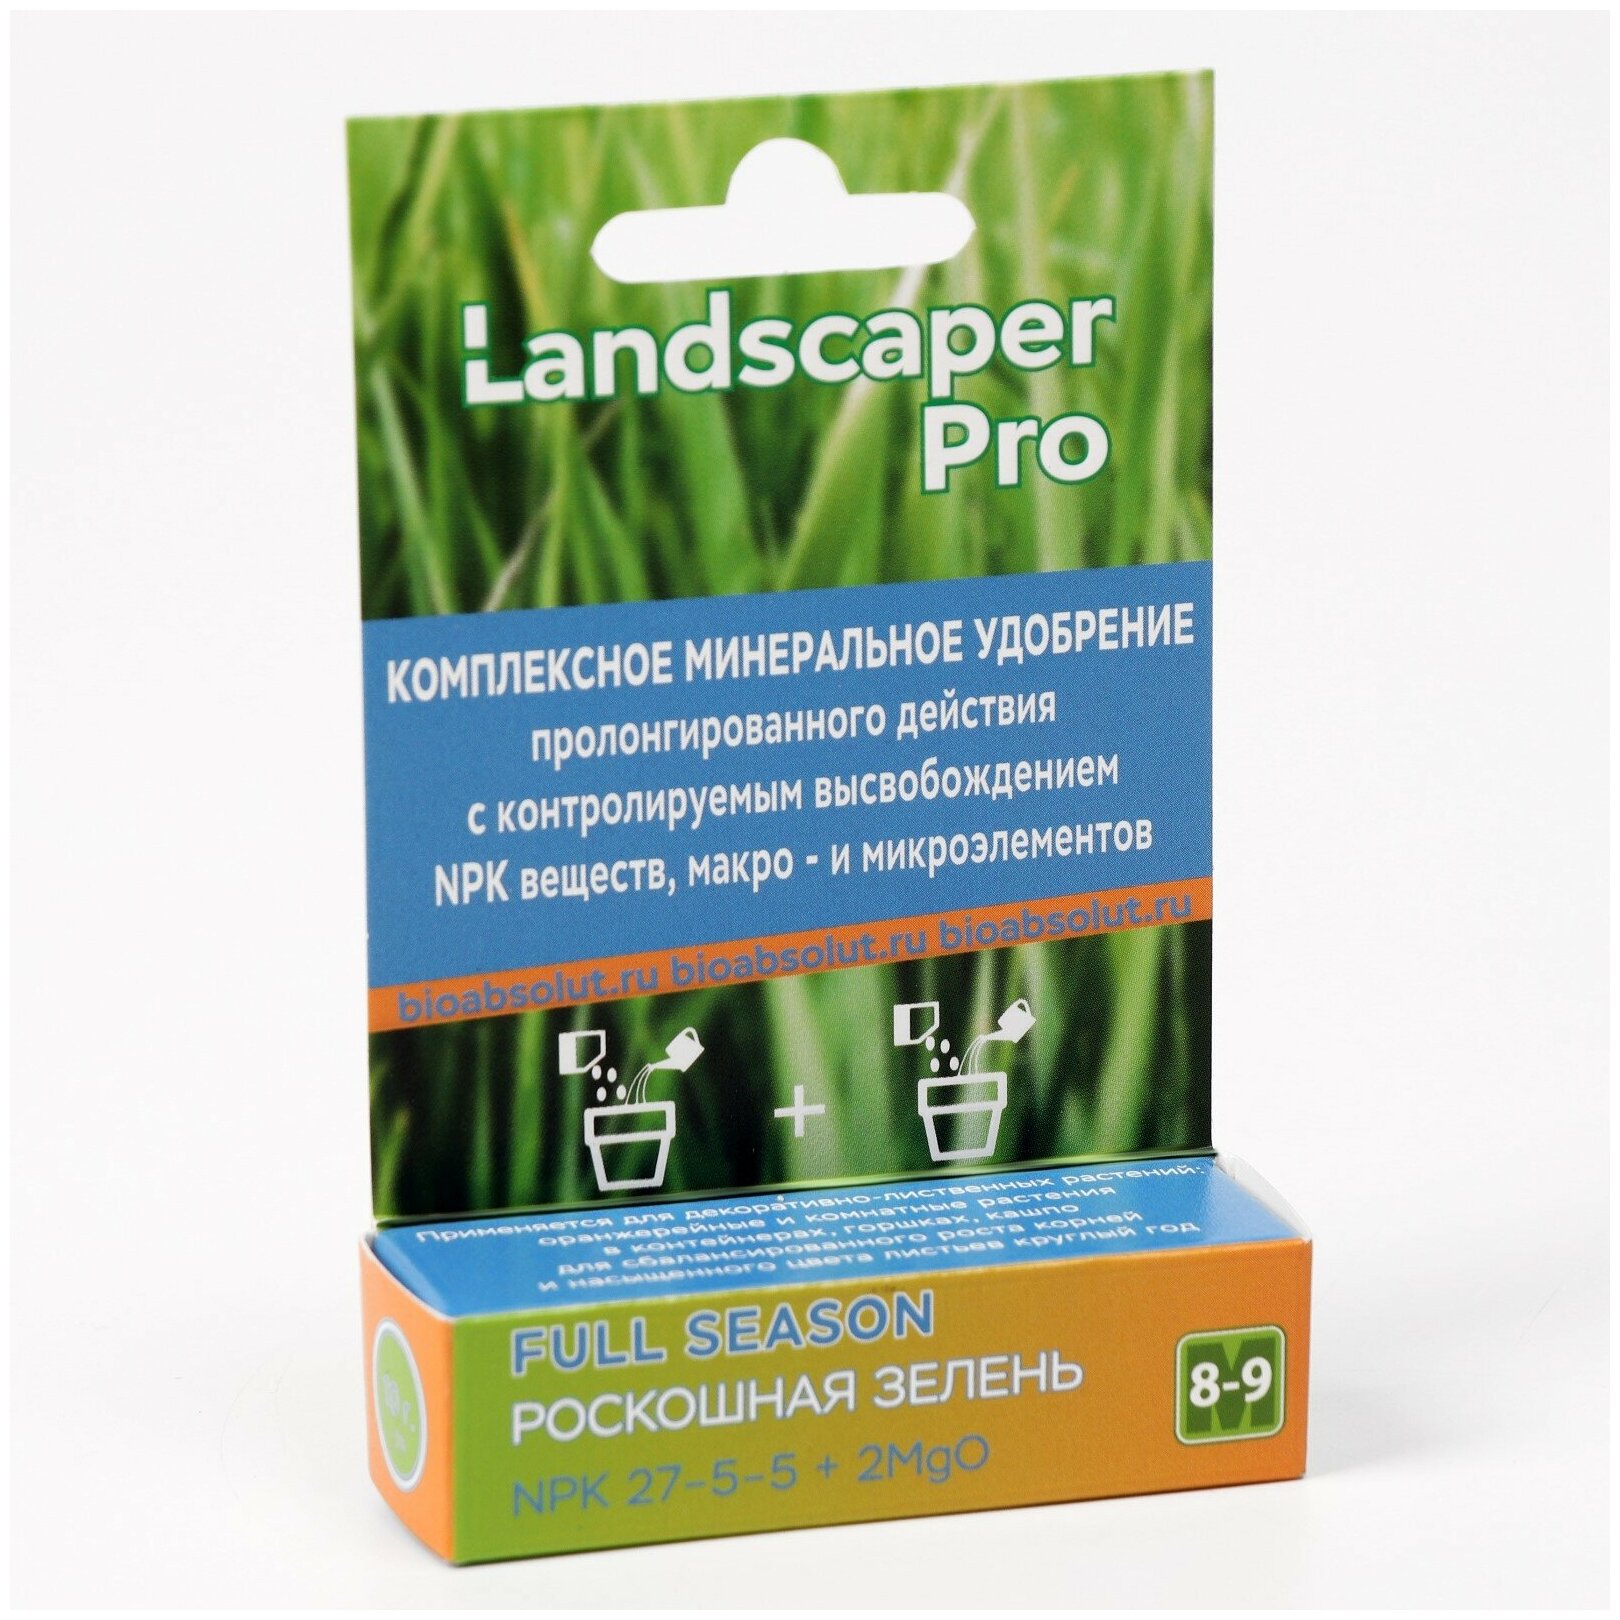 Удобрение для декоративно-лиственных Landscaper Рго 8-9 мес. NPK 27-5-5+2MgO+МЭ, 10 гр